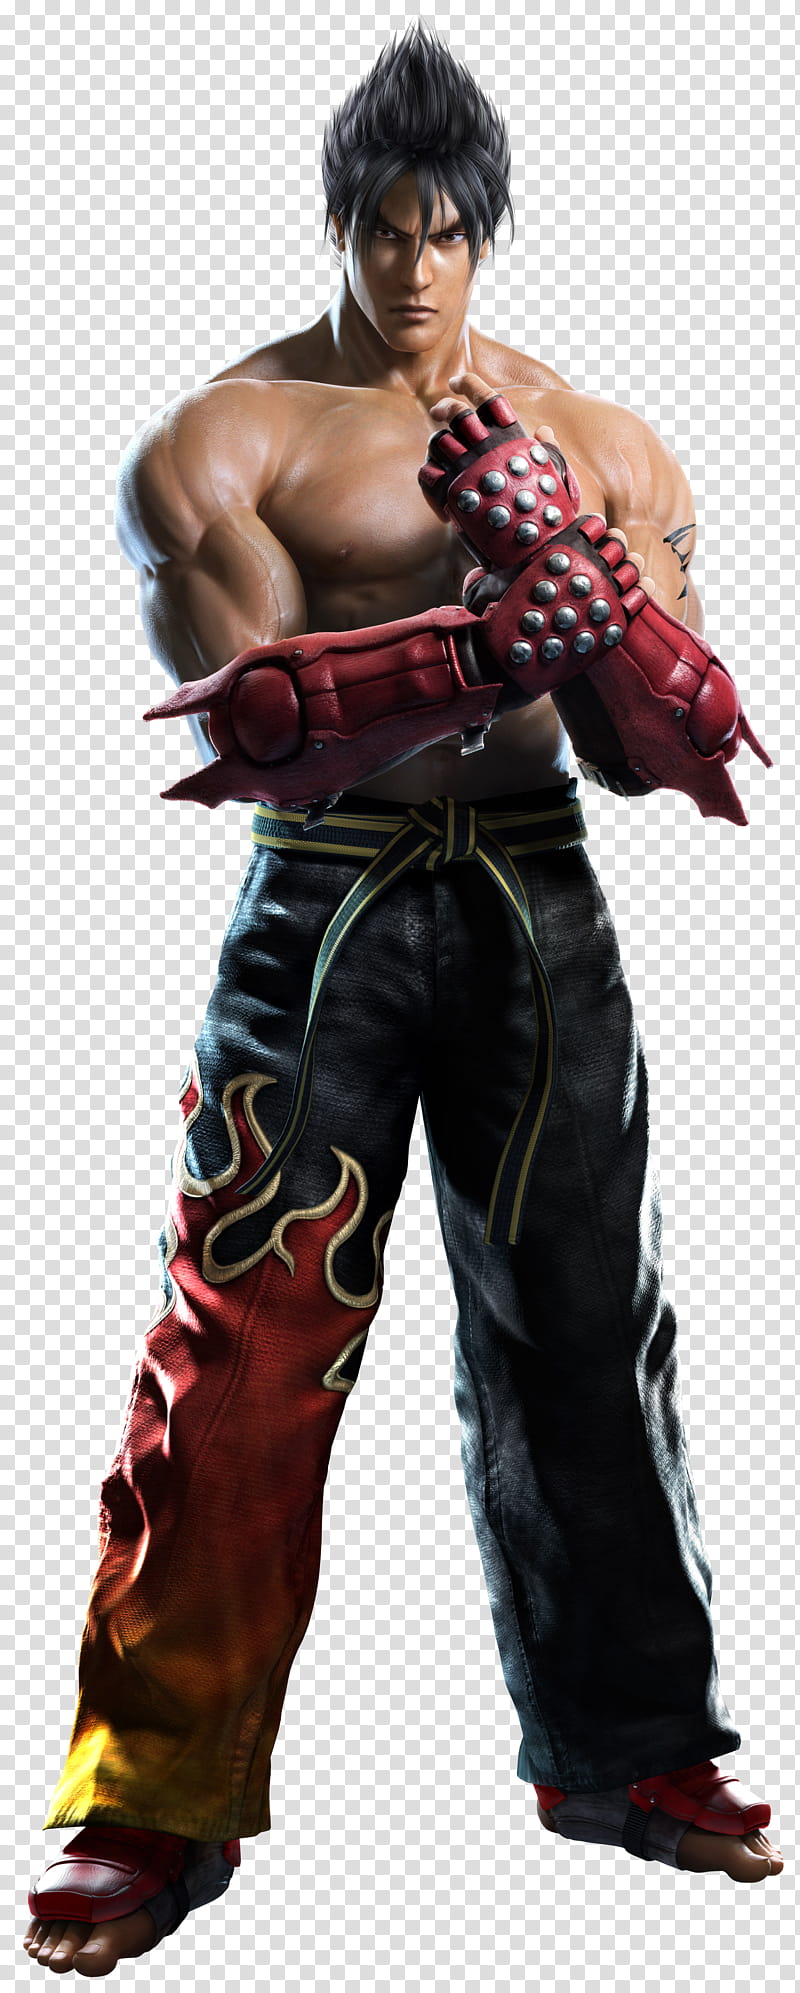 Jin Kazama TTT   , Street Fighter Ryu ken transparent background PNG clipart